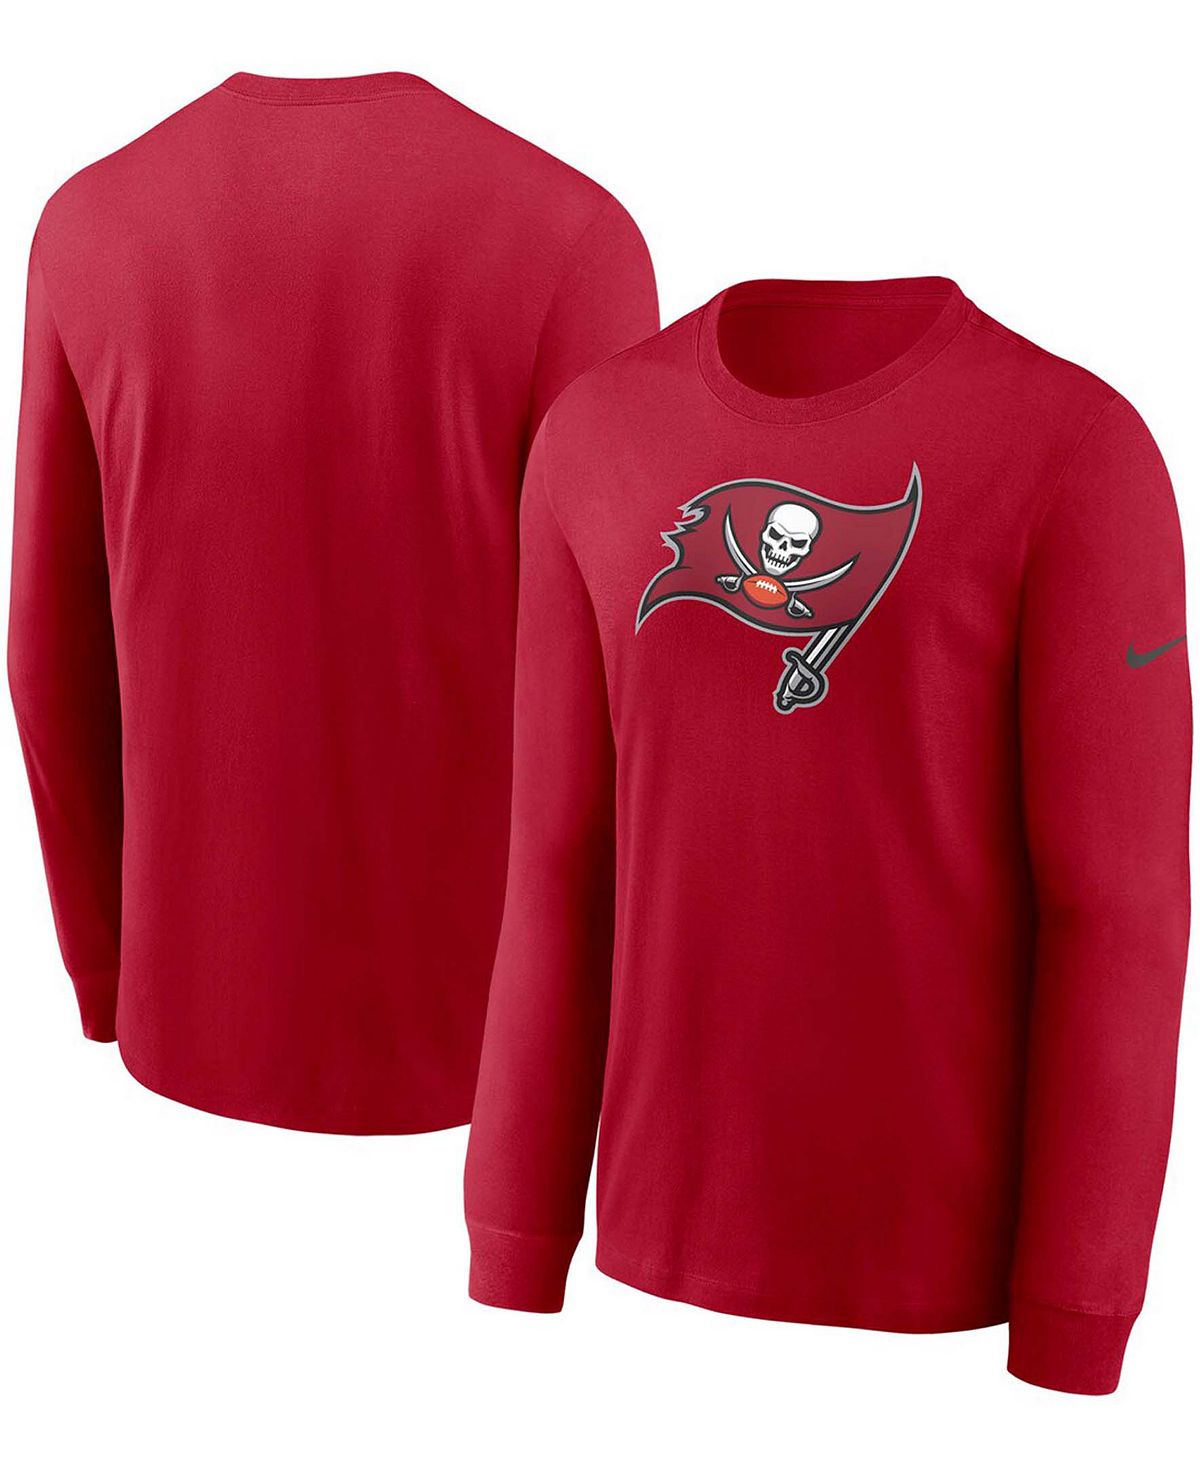 Мужская красная футболка с длинным рукавом и логотипом Tampa Bay Buccaneers Primary Nike